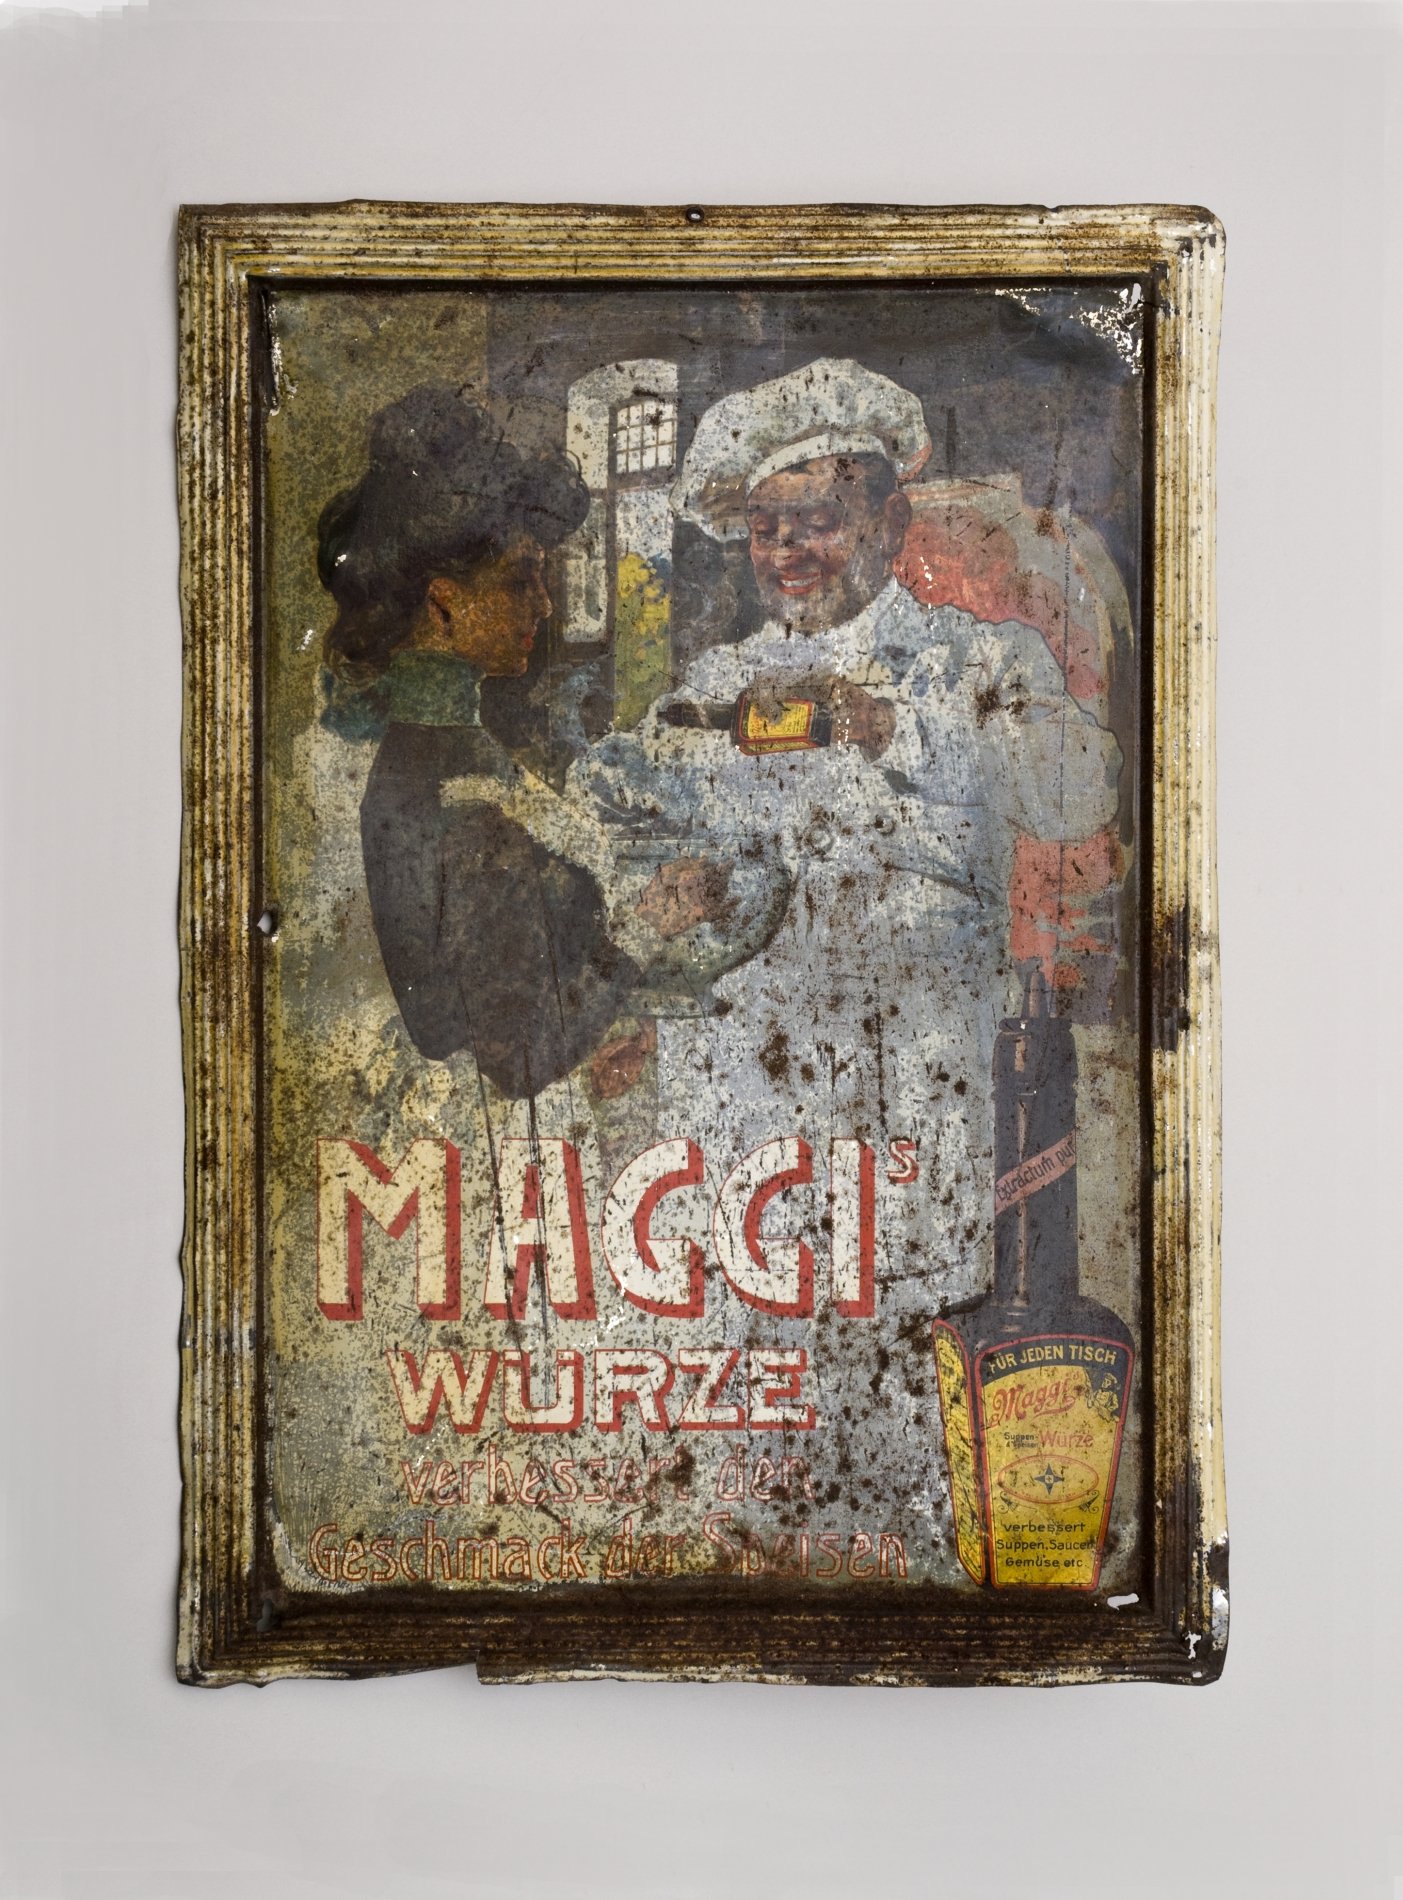 Werbe-Blechschild "Maggi-Würze" (Stiftung Domäne Dahlem - Landgut und Museum, Weiternutzung nur mit Genehmigung des Museums CC BY-NC-SA)